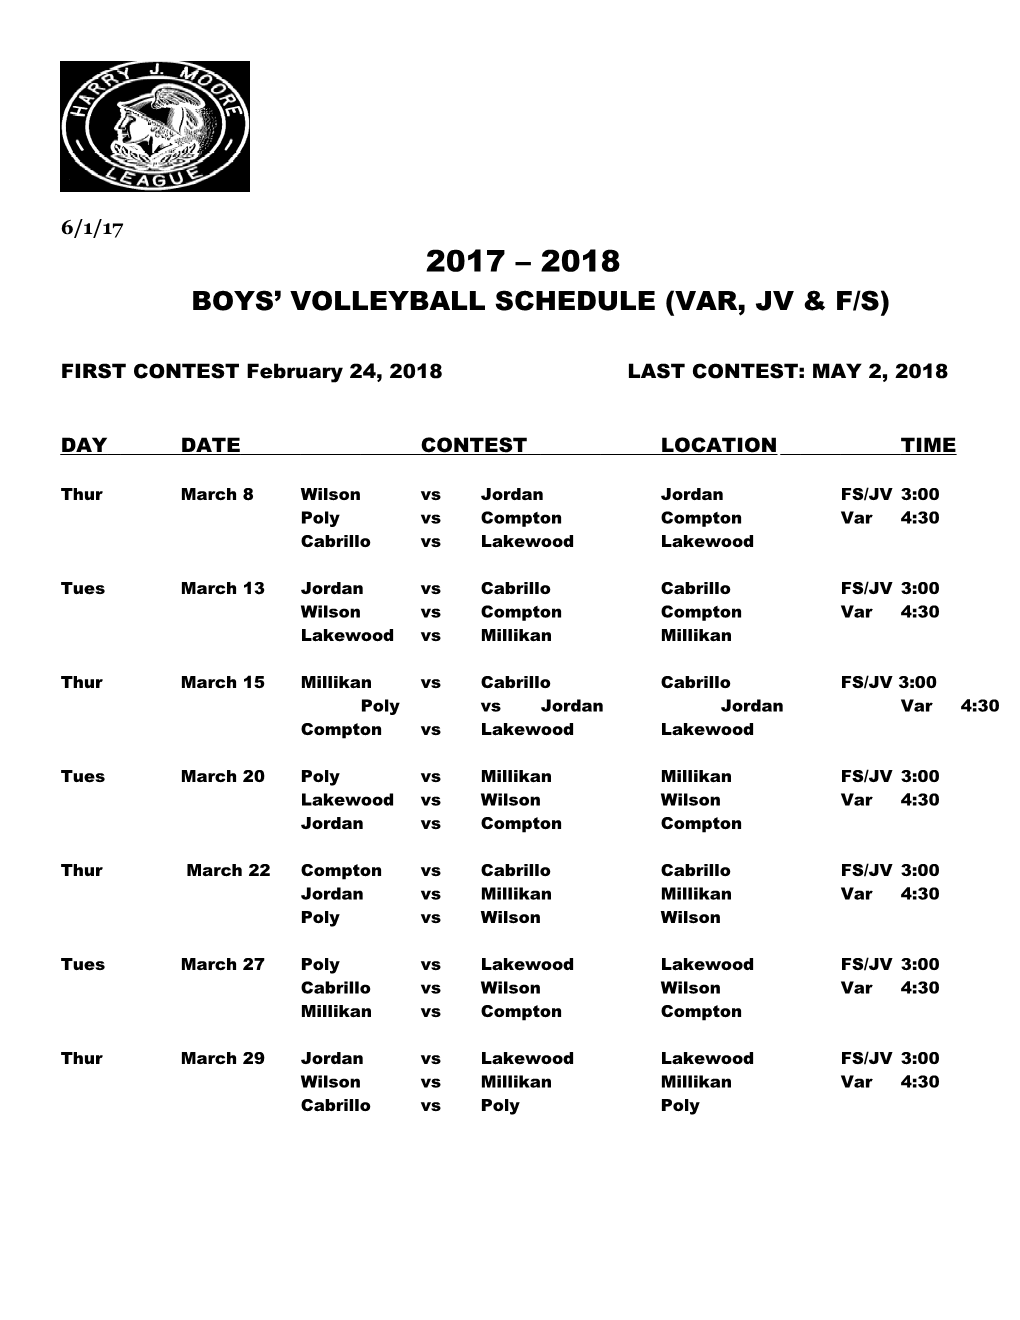 Boys Volleyball Schedule (Var, Jv & F/S)